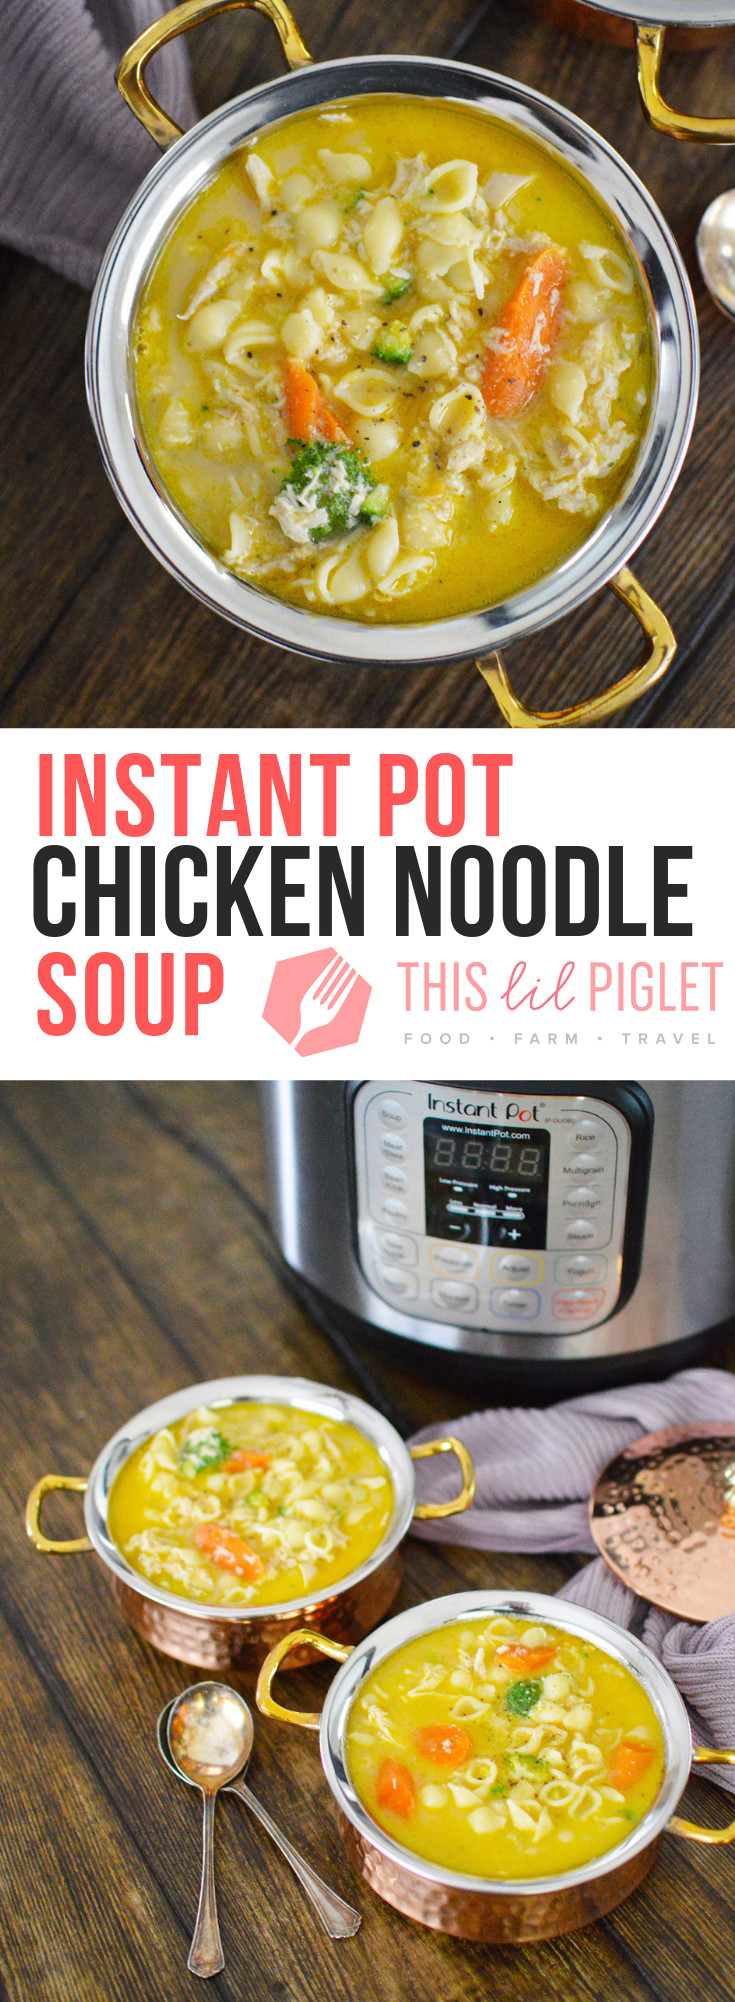 Instant Pot Whole Chicken Soup
 Instant Pot Whole Chicken Noodle Soup This Lil Piglet